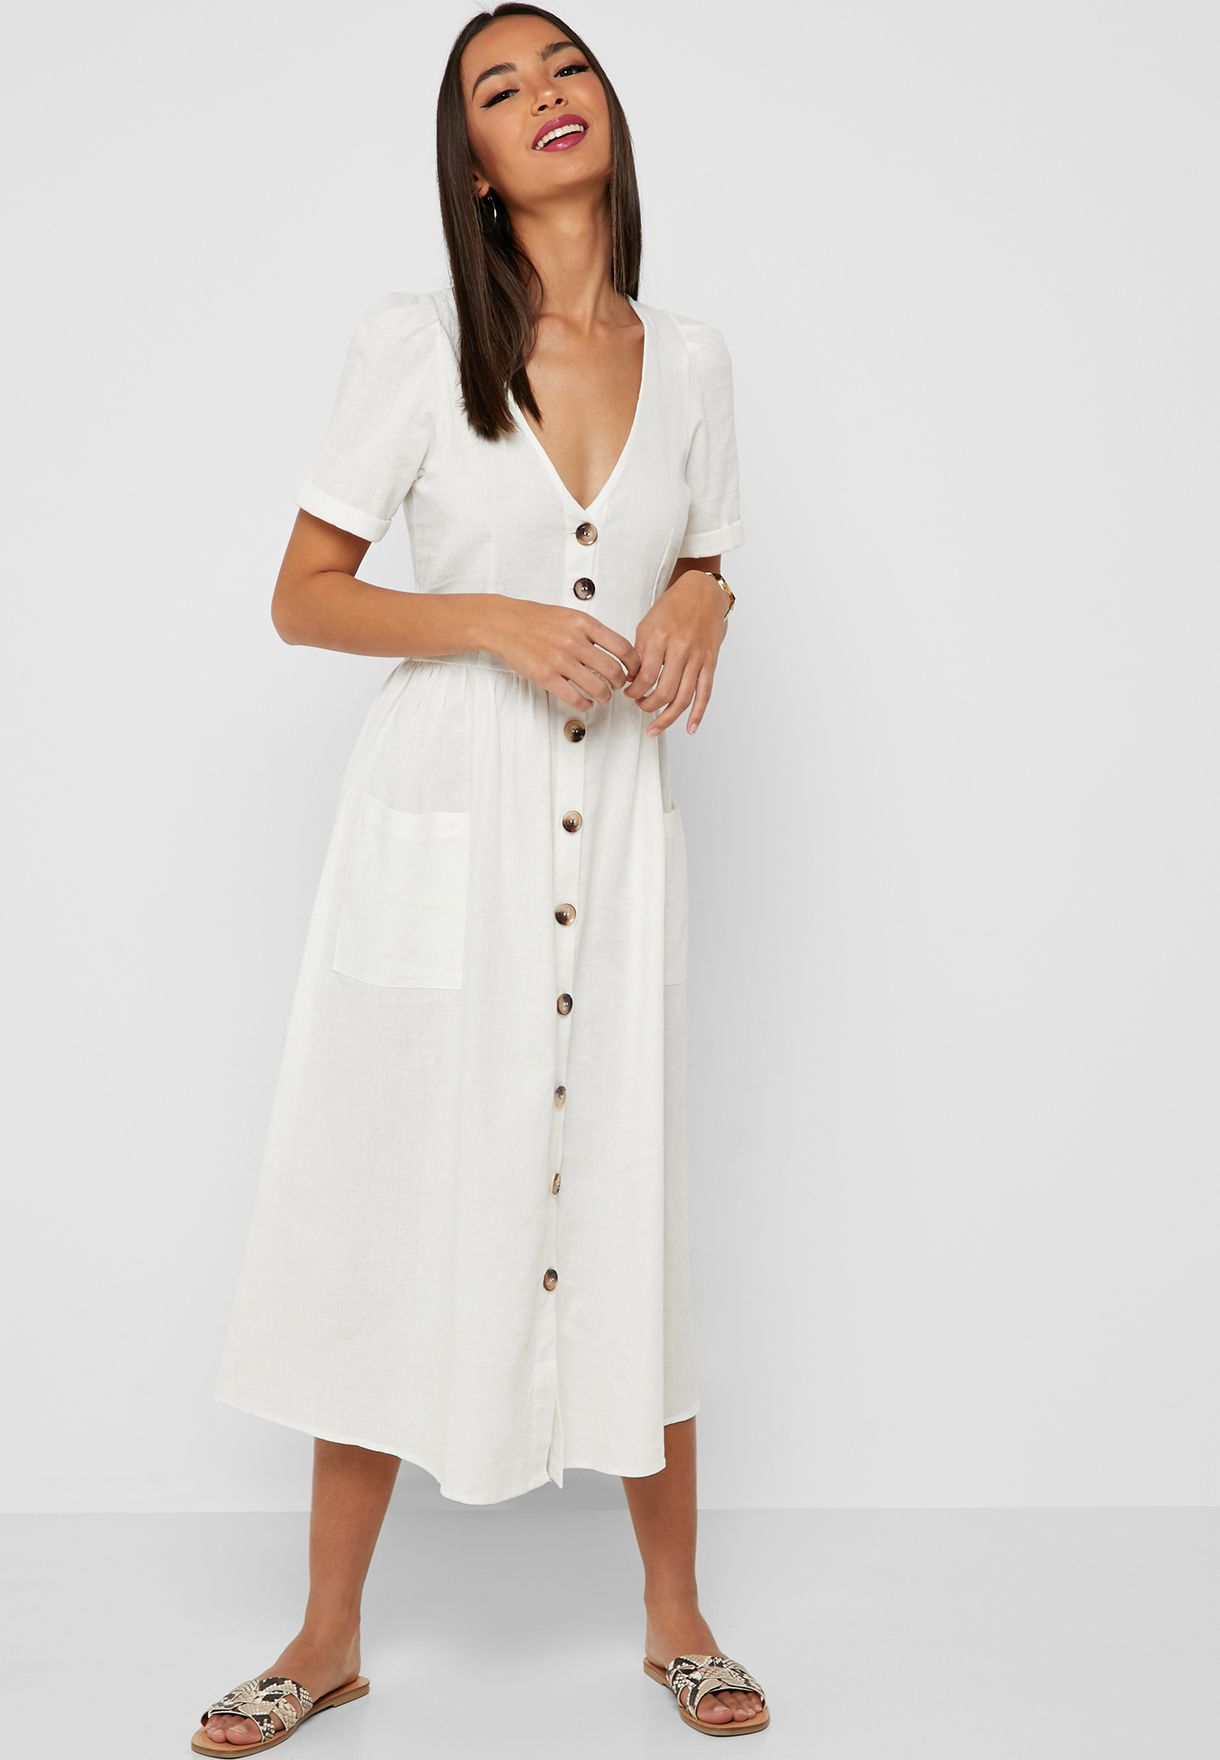 white button dress